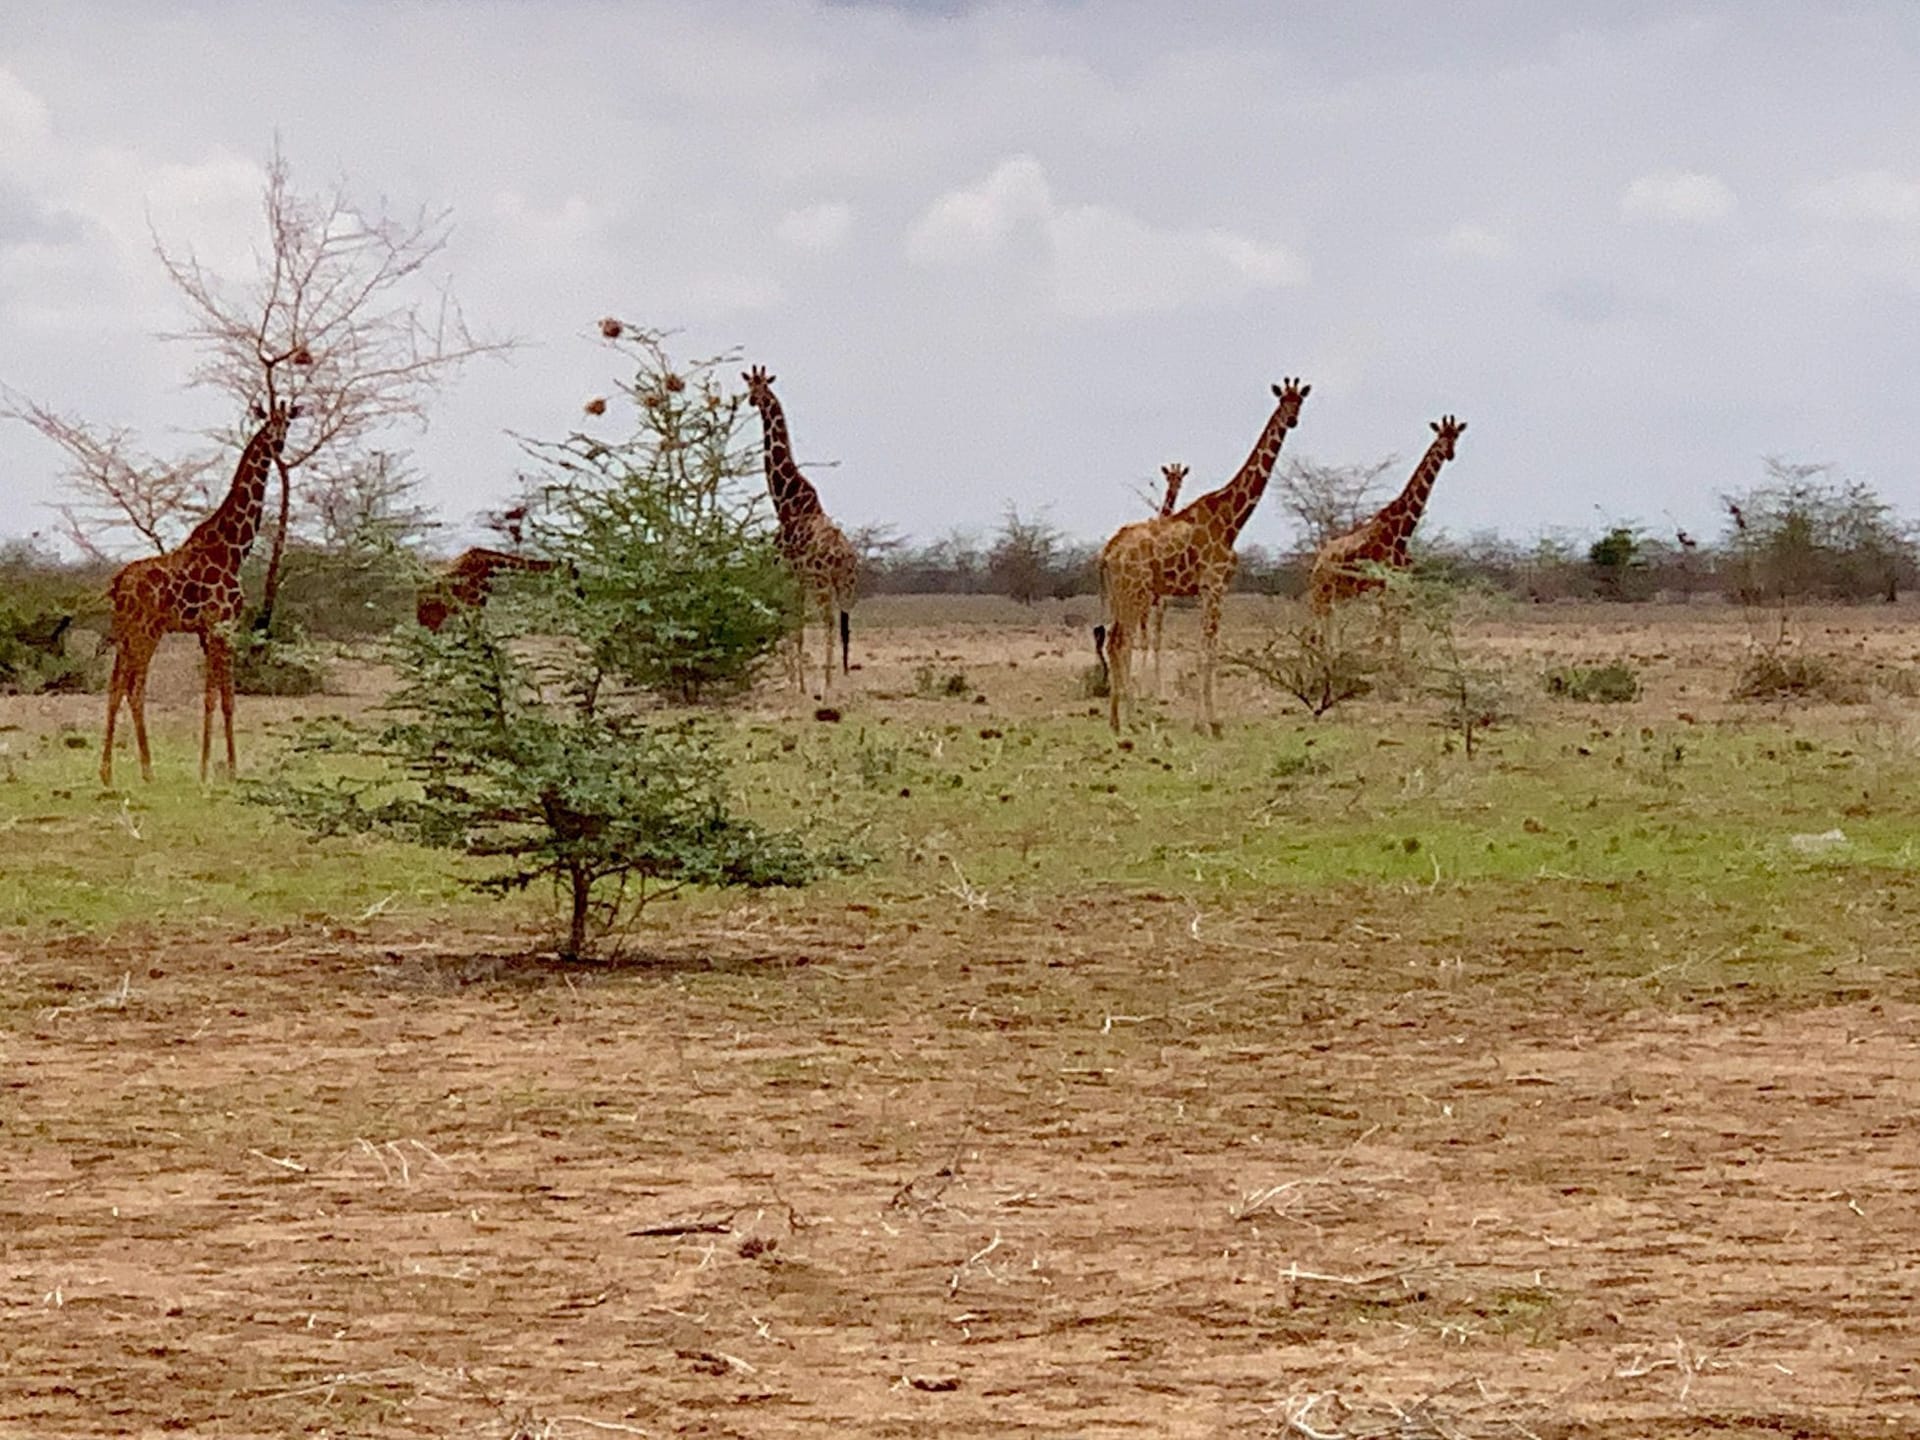 In der Umgebung sind noch einige wilde Giraffen unterwegs.